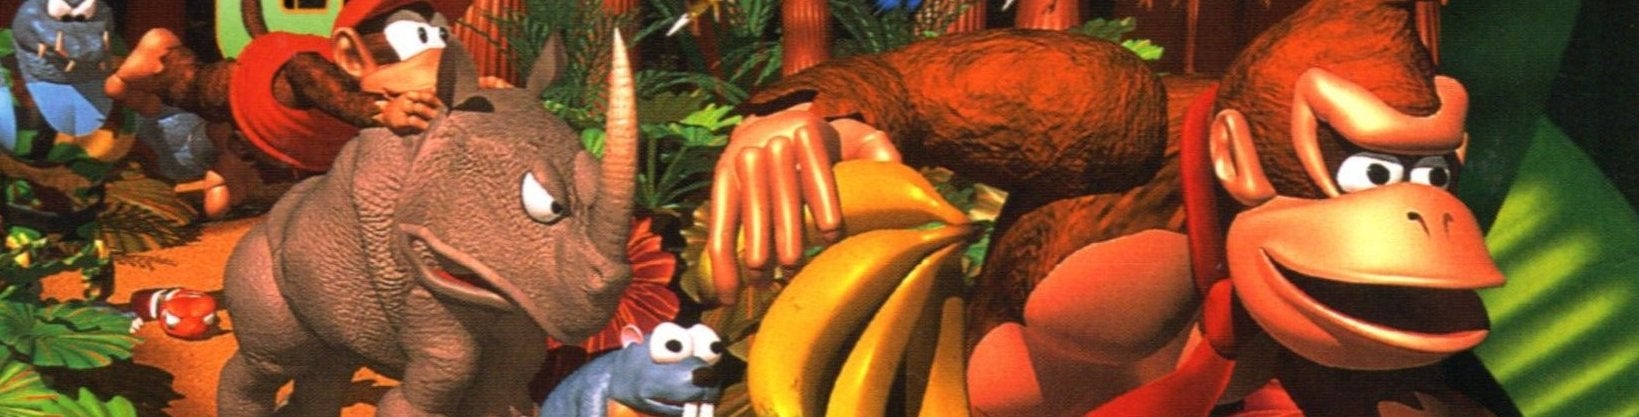 Afbeeldingen van Donkey Kong Country-games naar Wii U en Nintendo 3DS